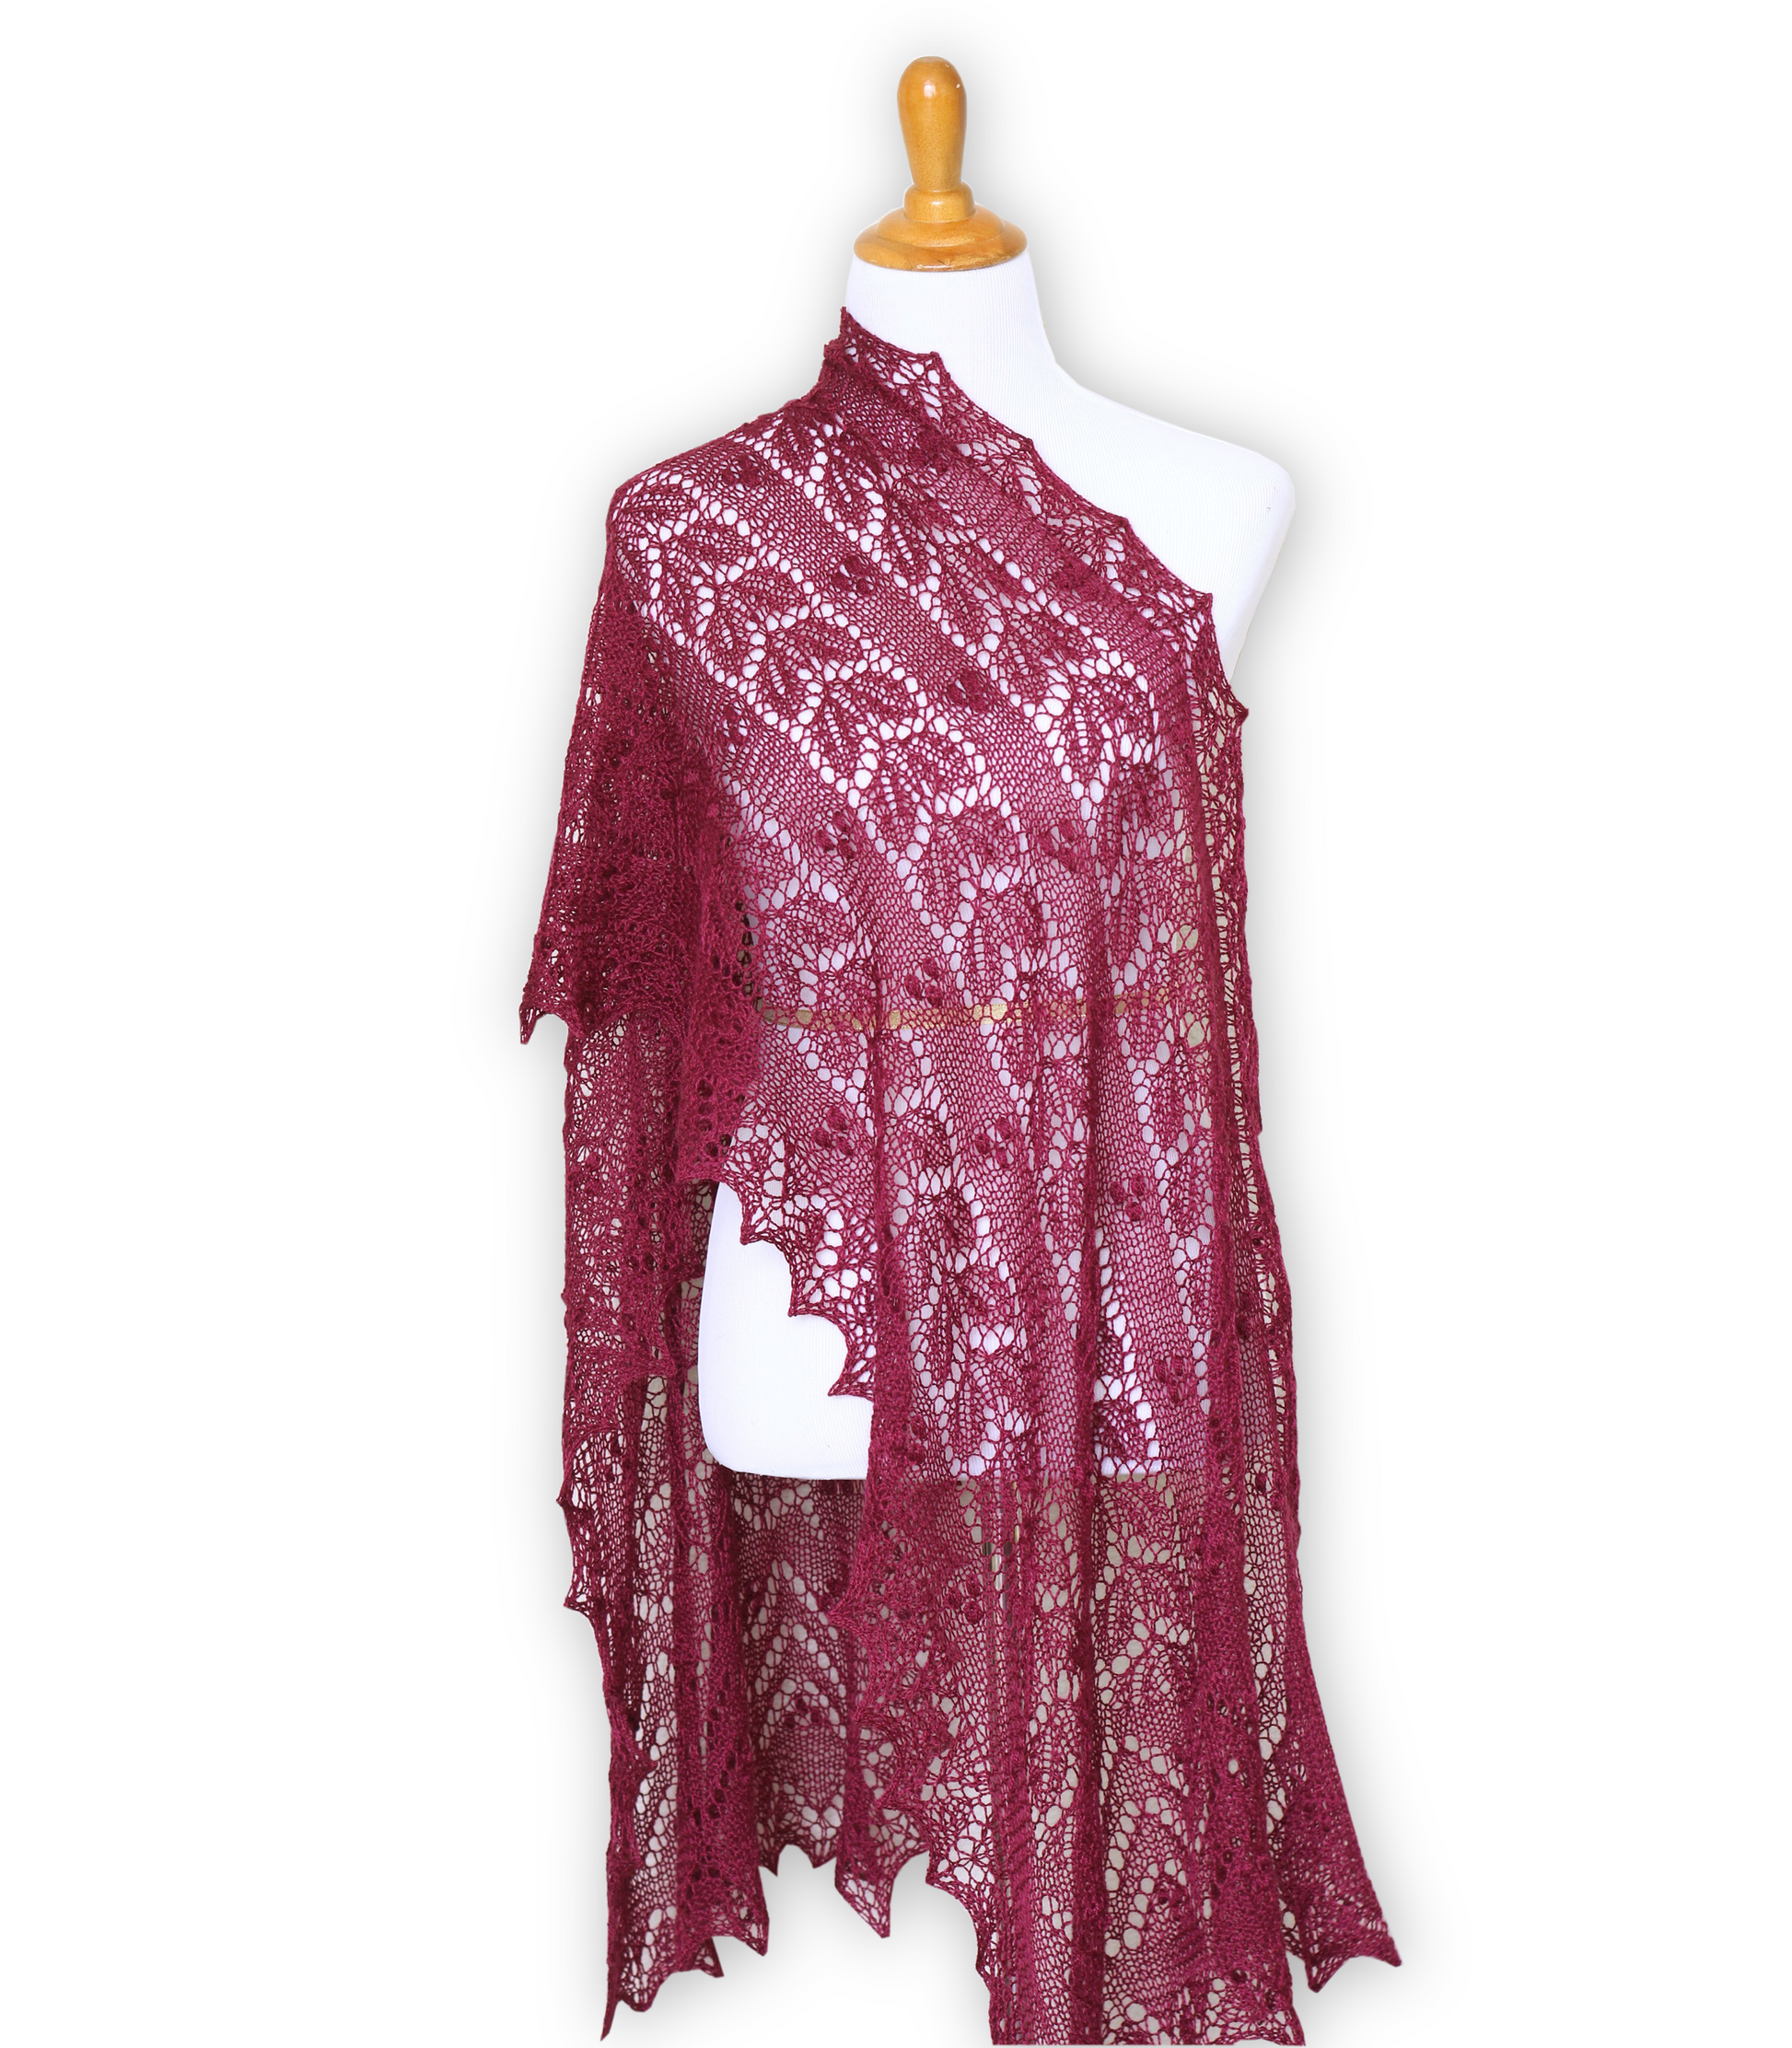 Wedding shawl, bridal shawl, lace shawl in plum color